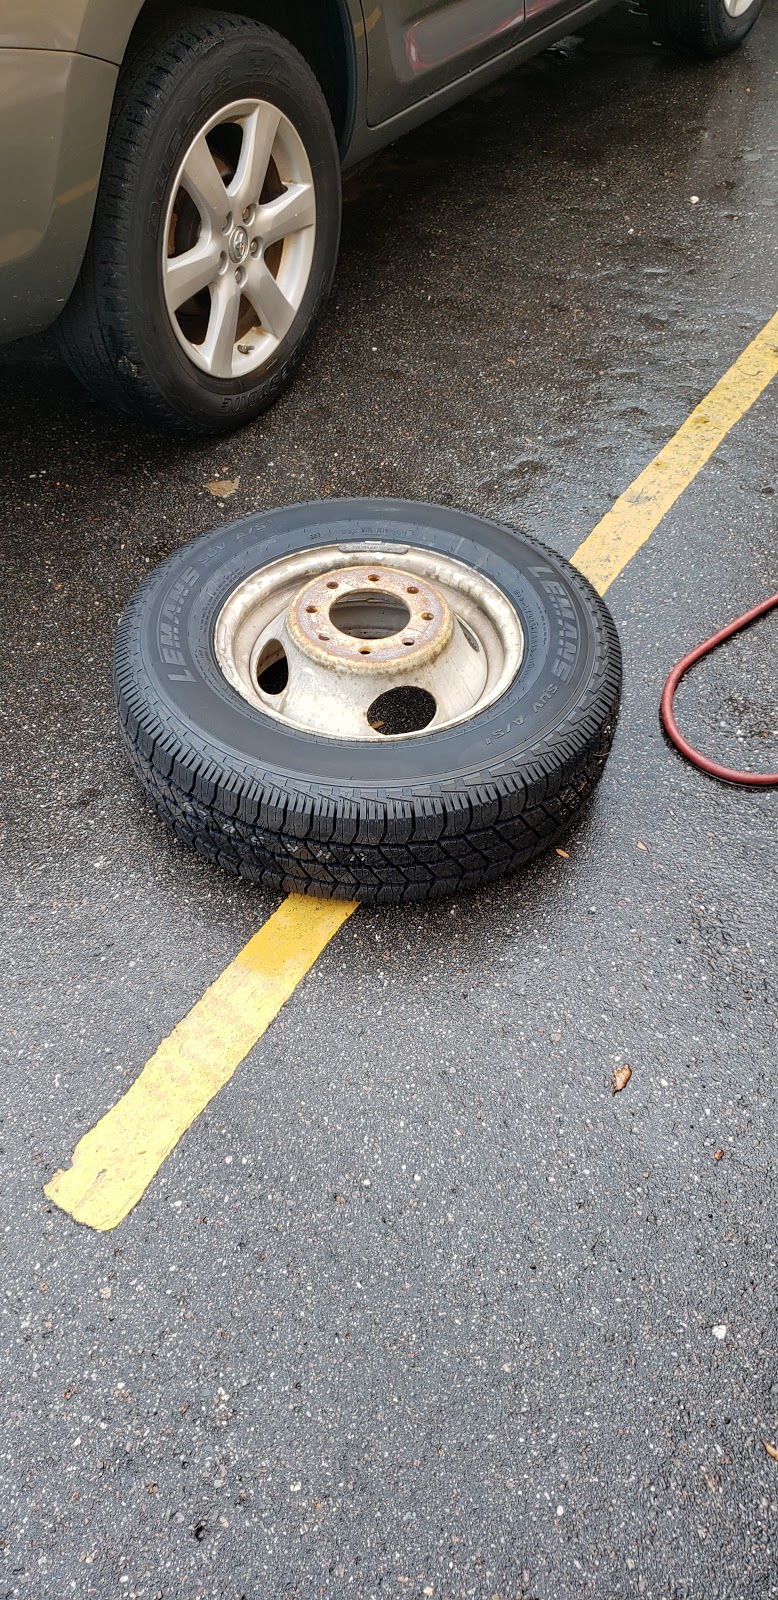 Ten Auto Repair And Tires | 5601 Seminole Blvd, Seminole, FL 33772, USA | Phone: (727) 392-9919